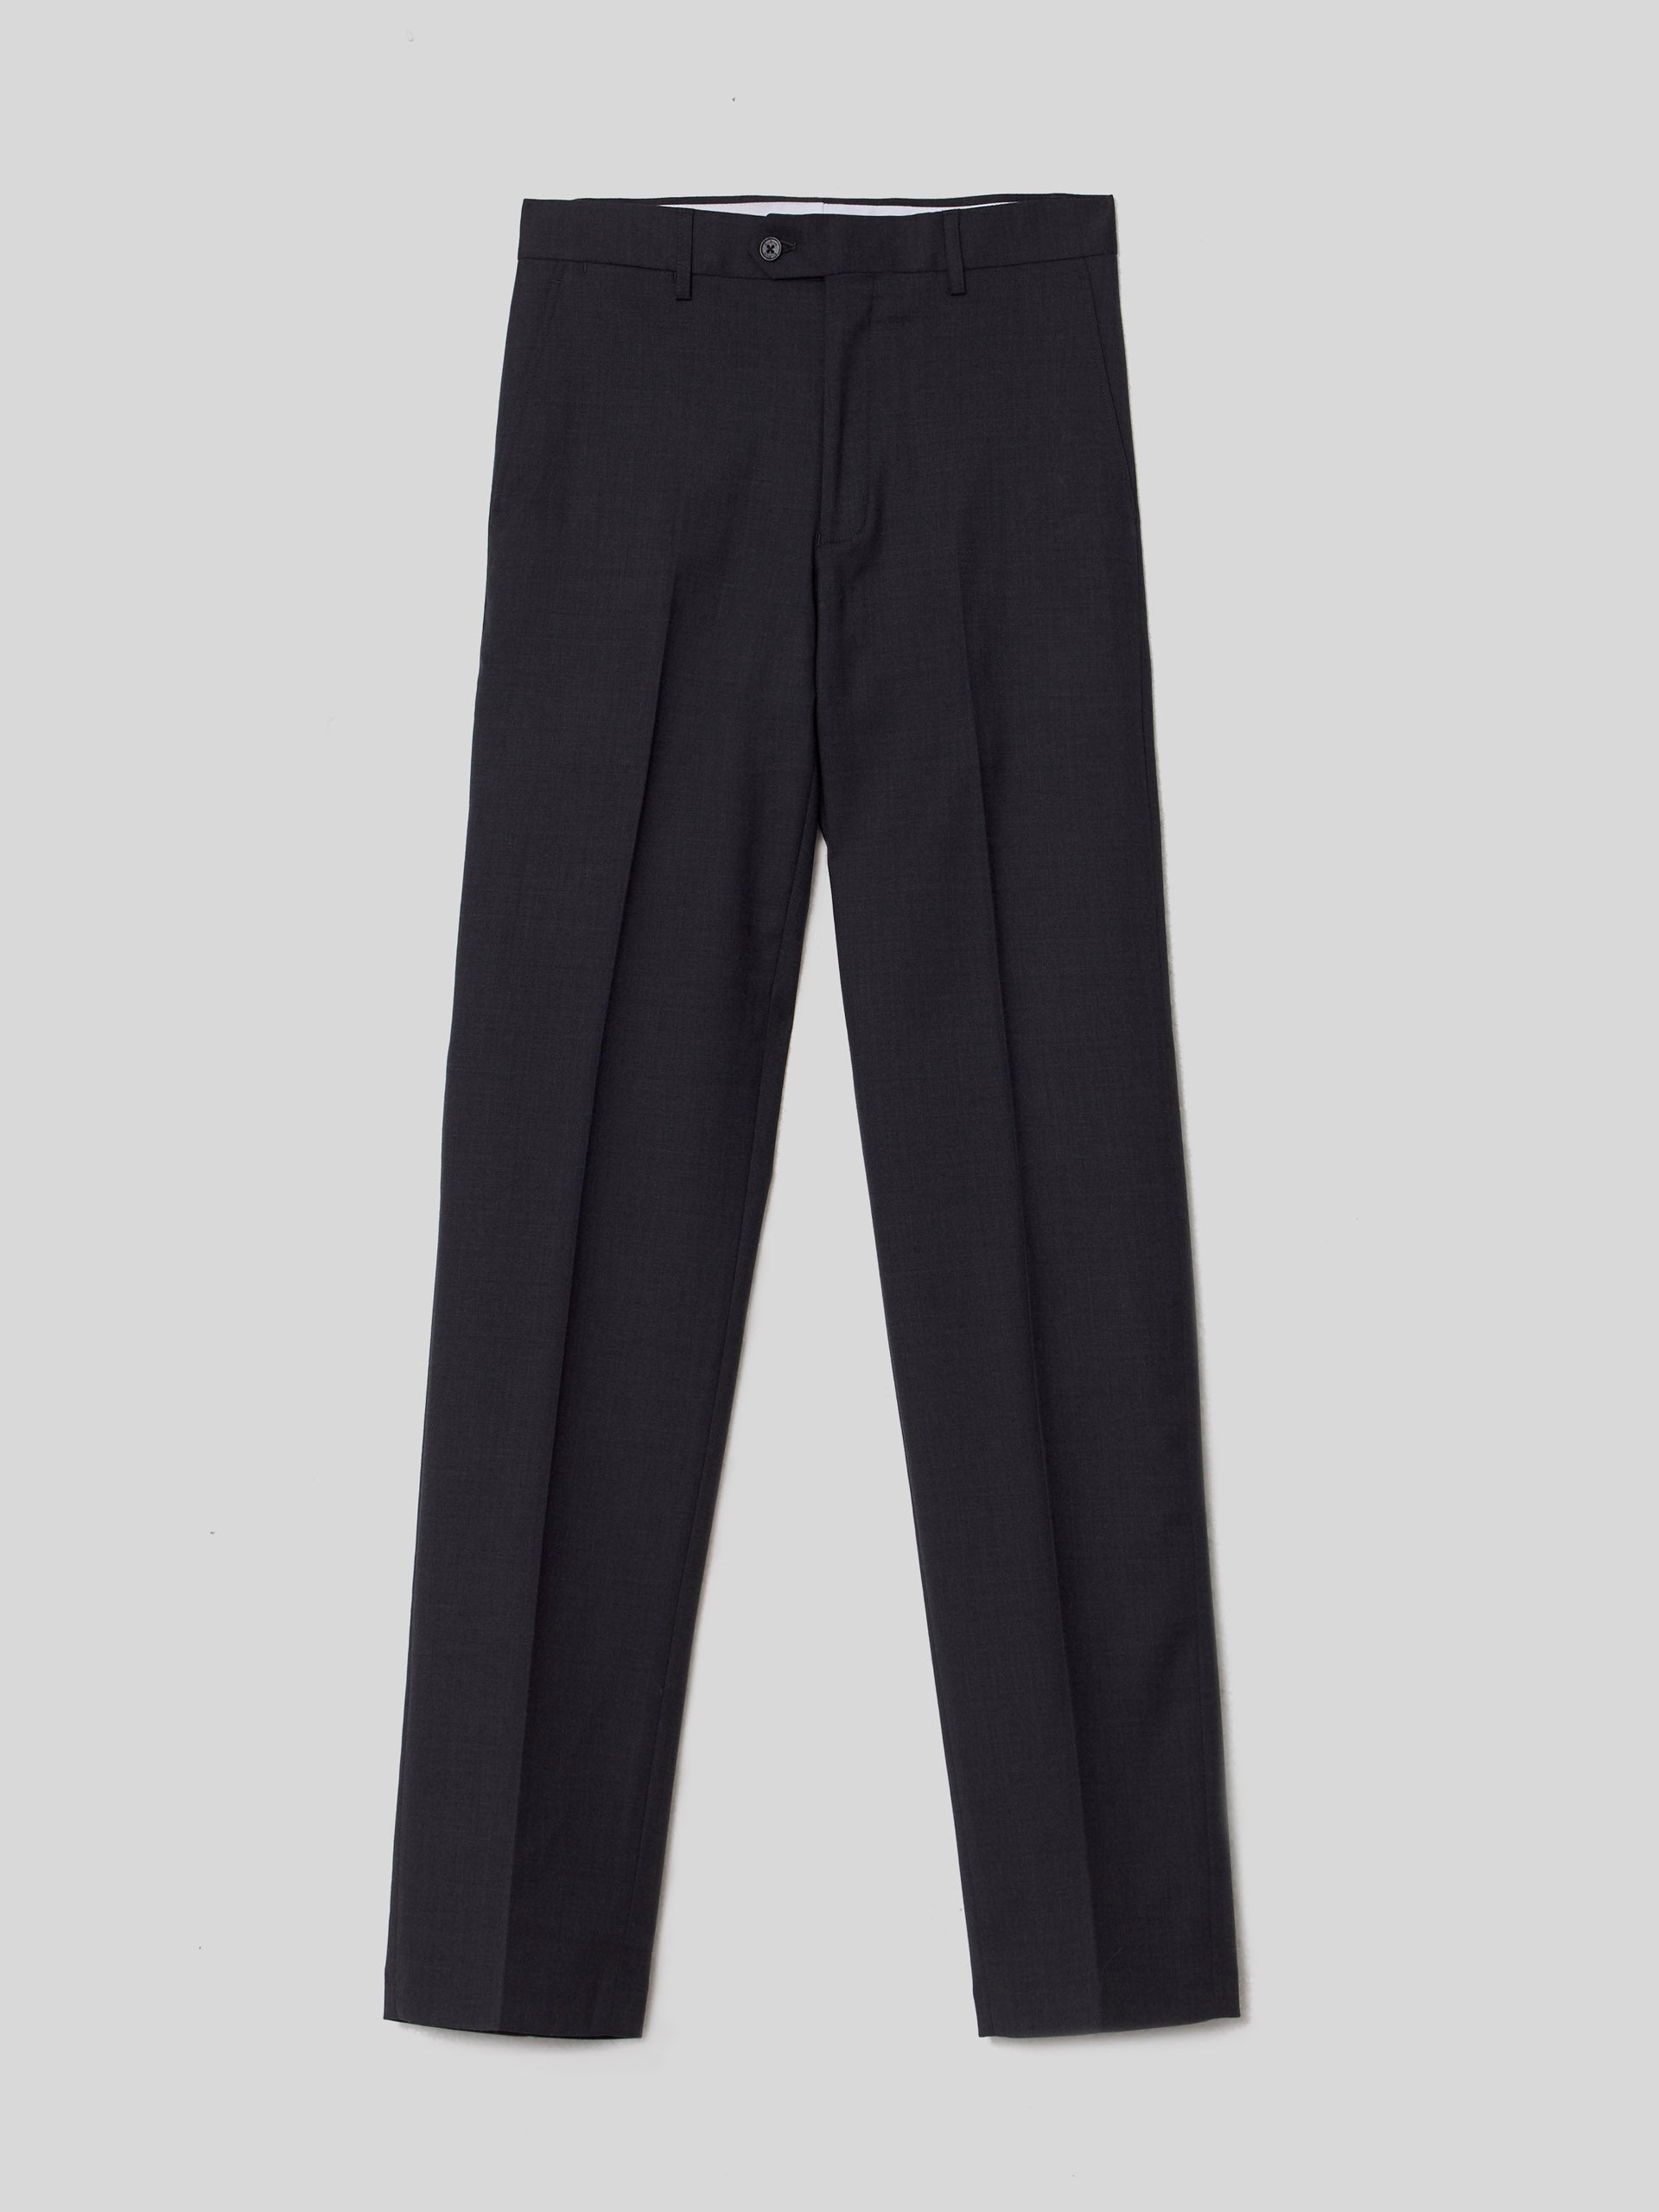 Pantalon traje natural stretch gris